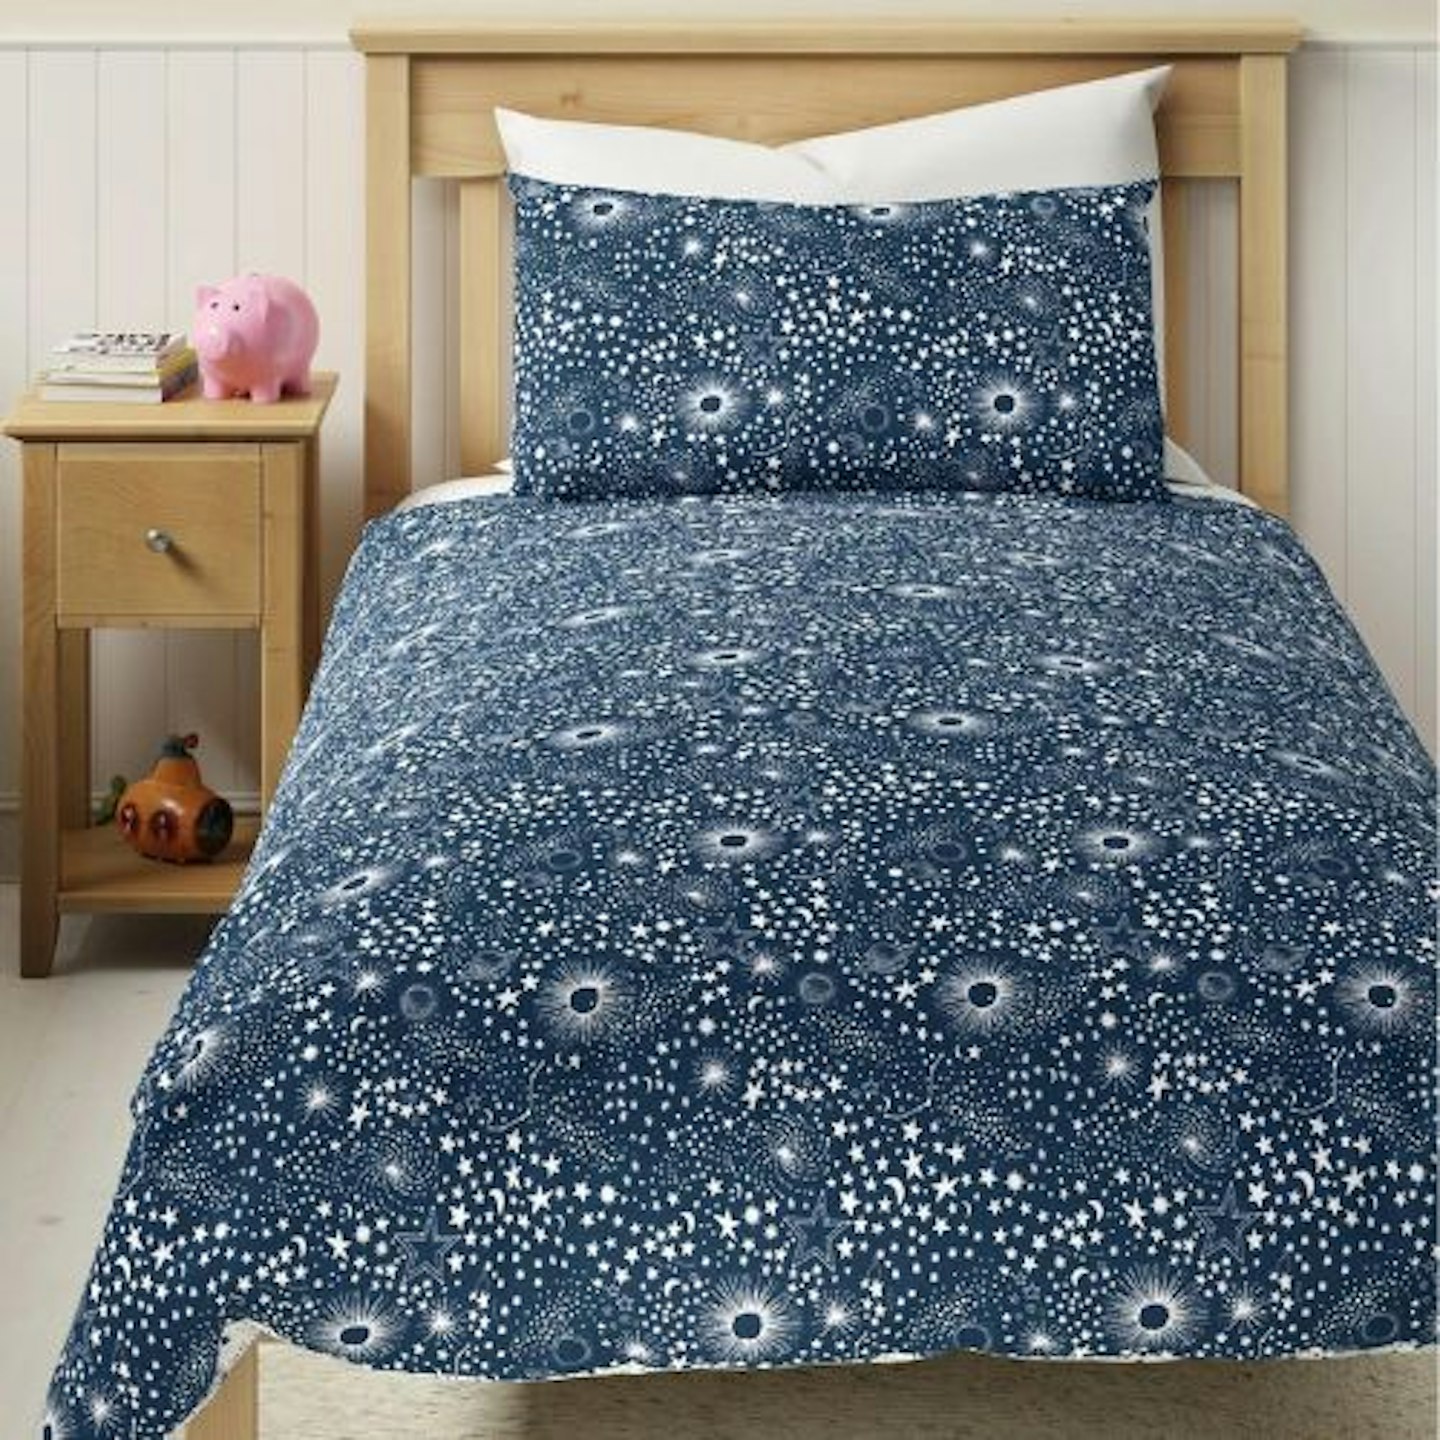 Cotton Blend Constellation Bedding Set